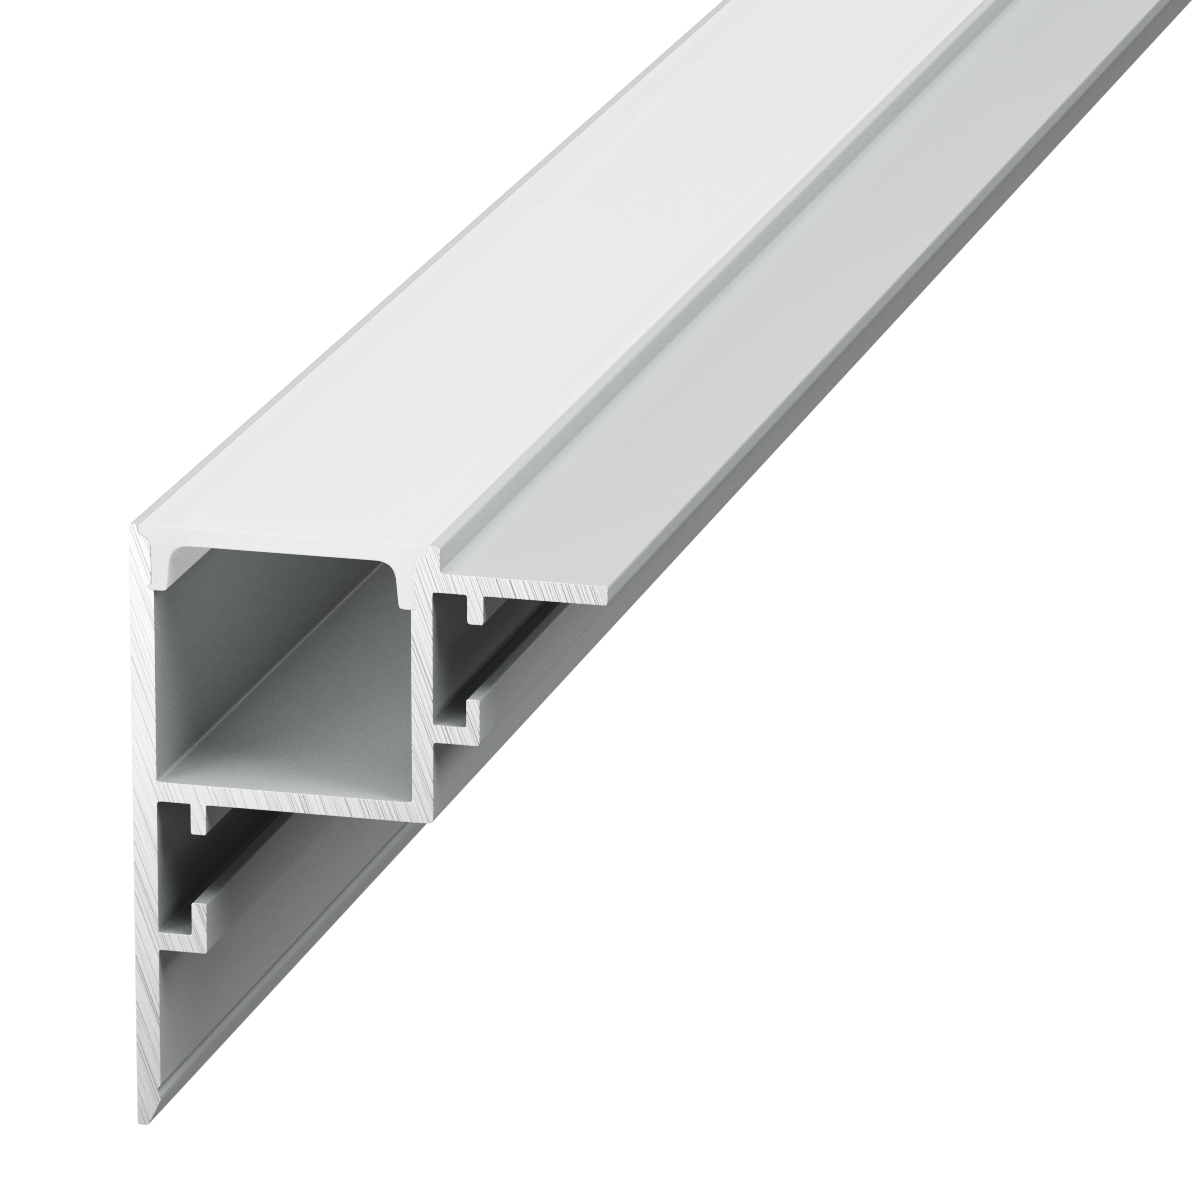 Профиль алюминиевый SWG PRO RC-3545-2.5 профиль для светодиодной ленты алюминиевый 1 м серебро угловой